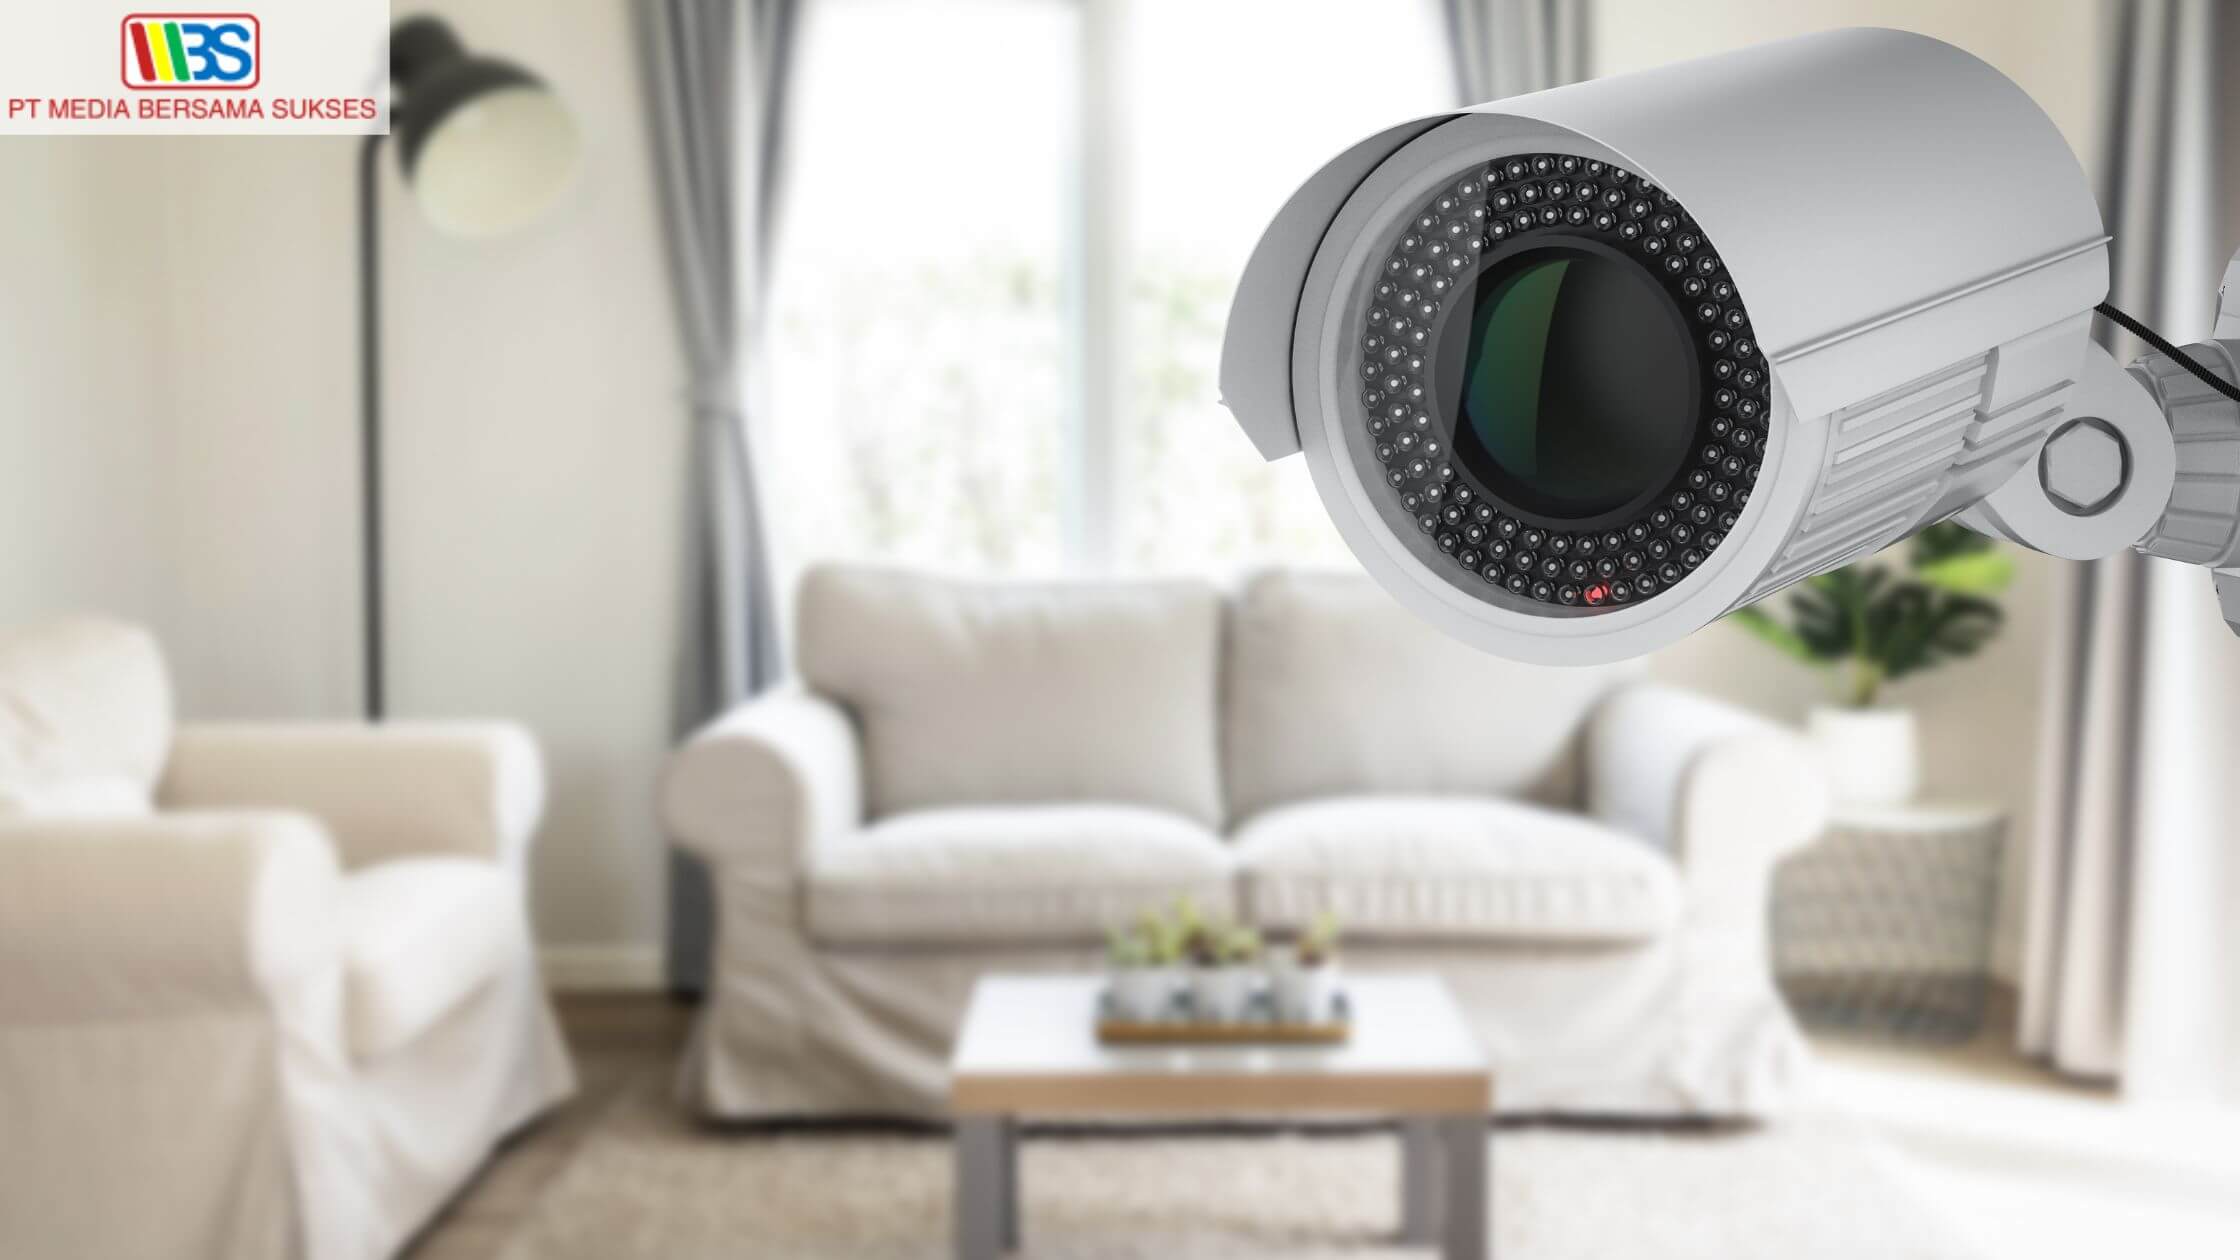 Jenis CCTV Rumah Terbaik, Perhatikan Karakteristiknya!